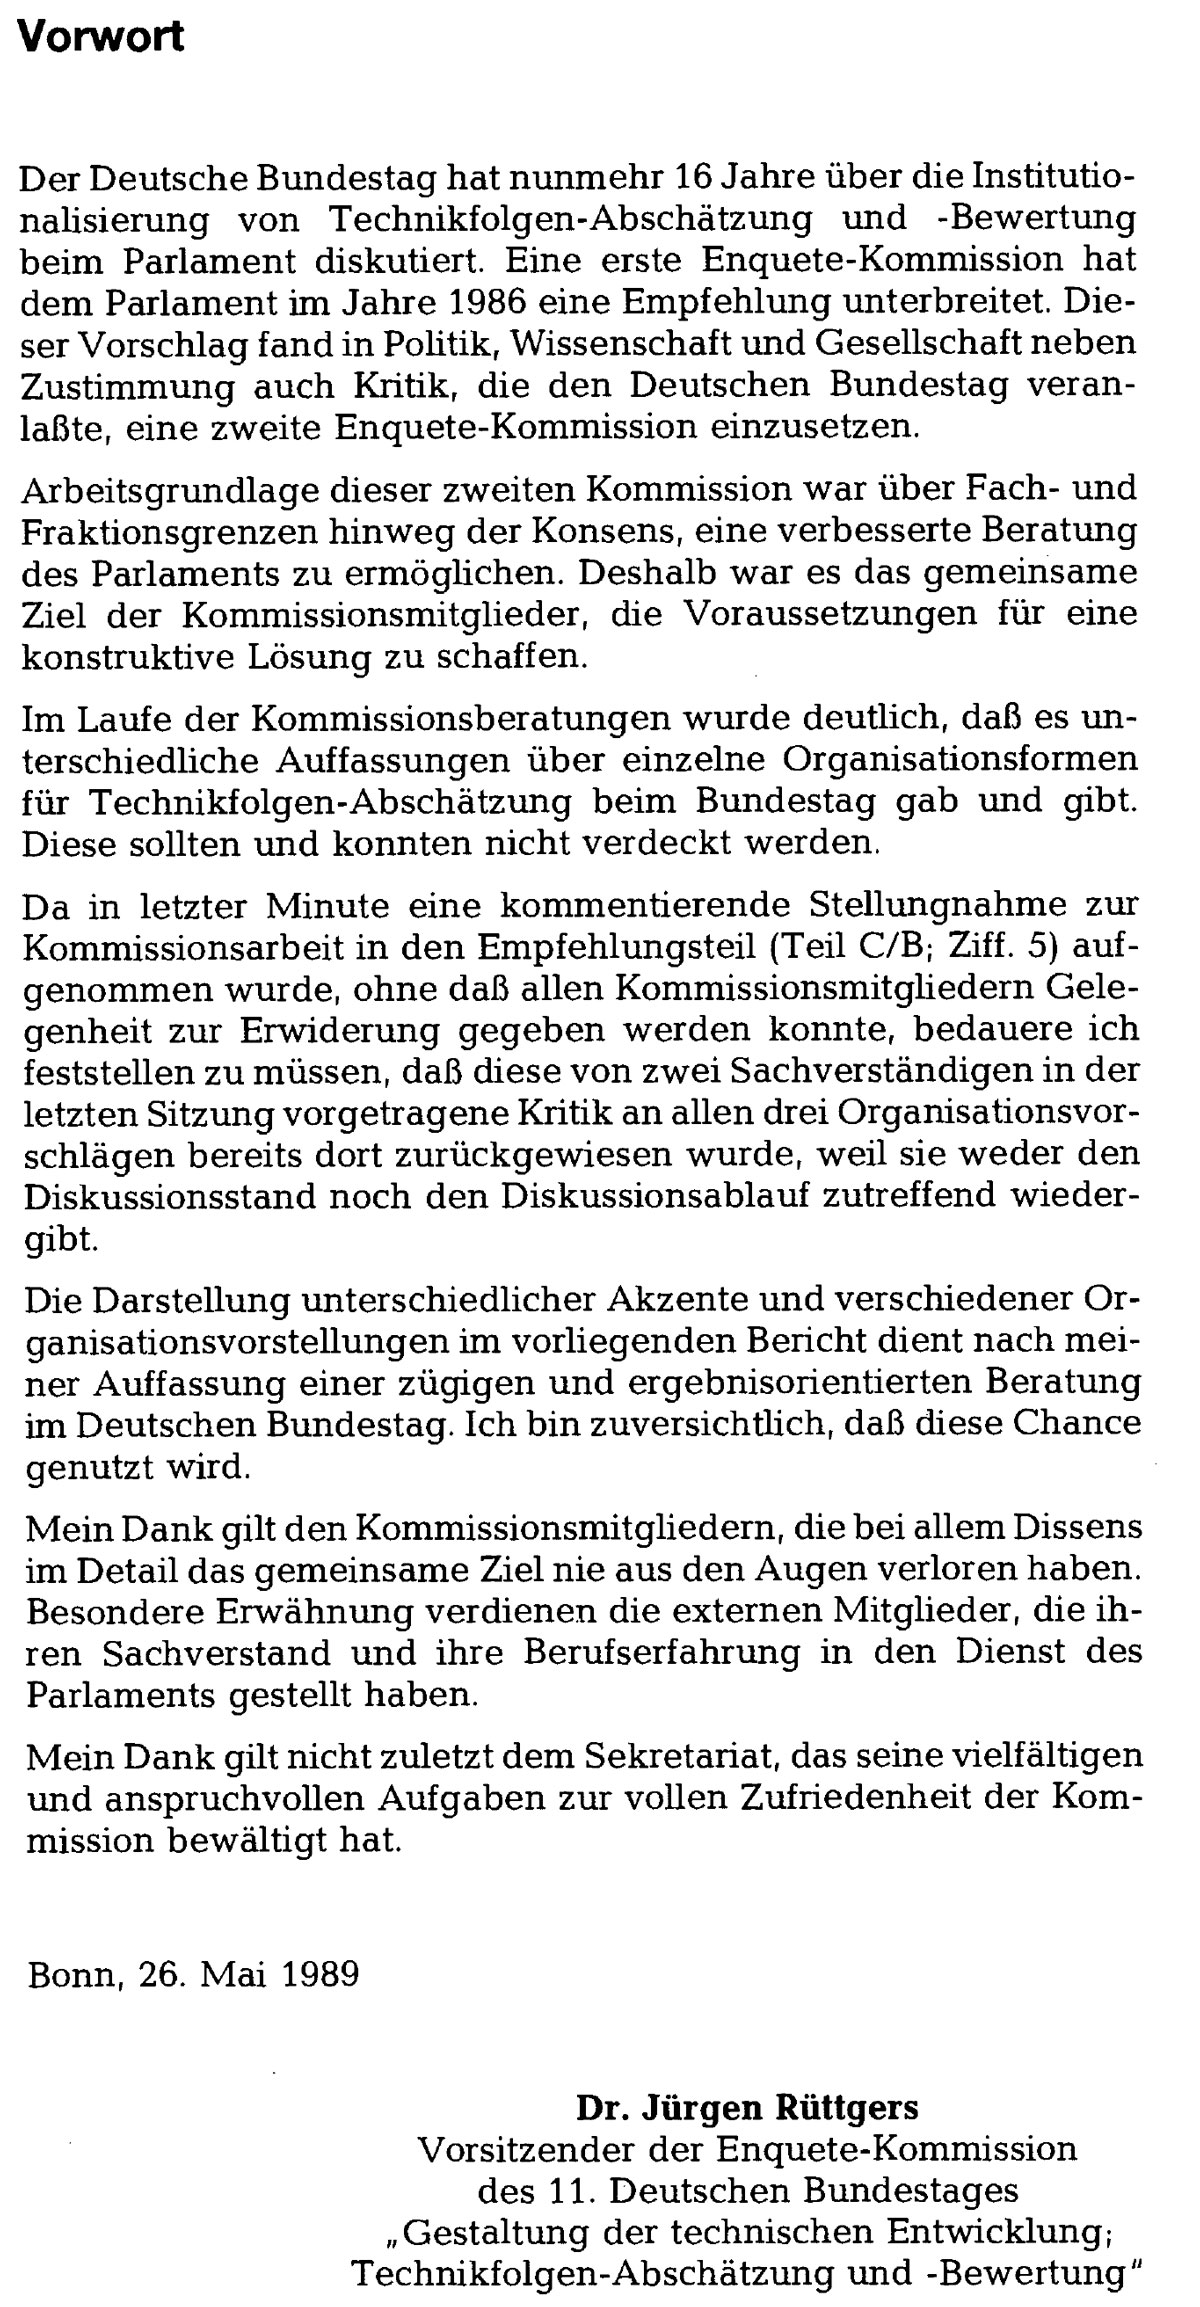 Abschlussbericht Enquetekommission TA 1989 jürgen rüttgers vorwort